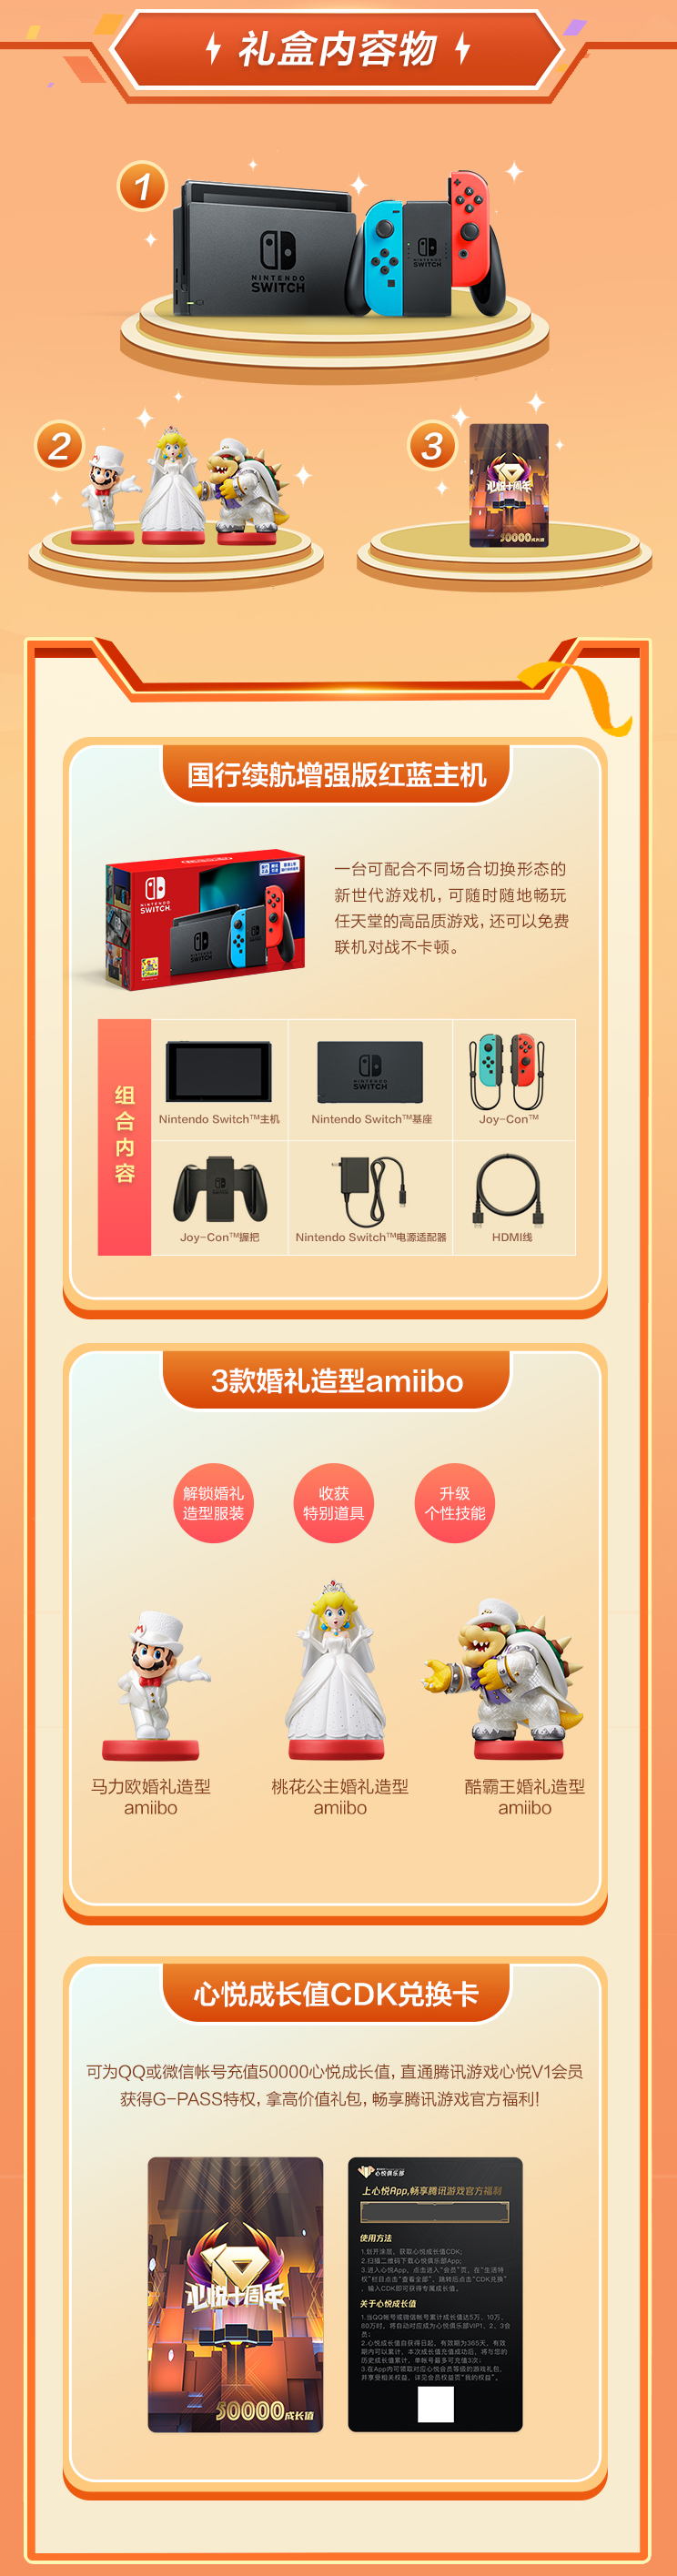 騰訊推出“心悅會員”Switch主機禮盒 售價2199元